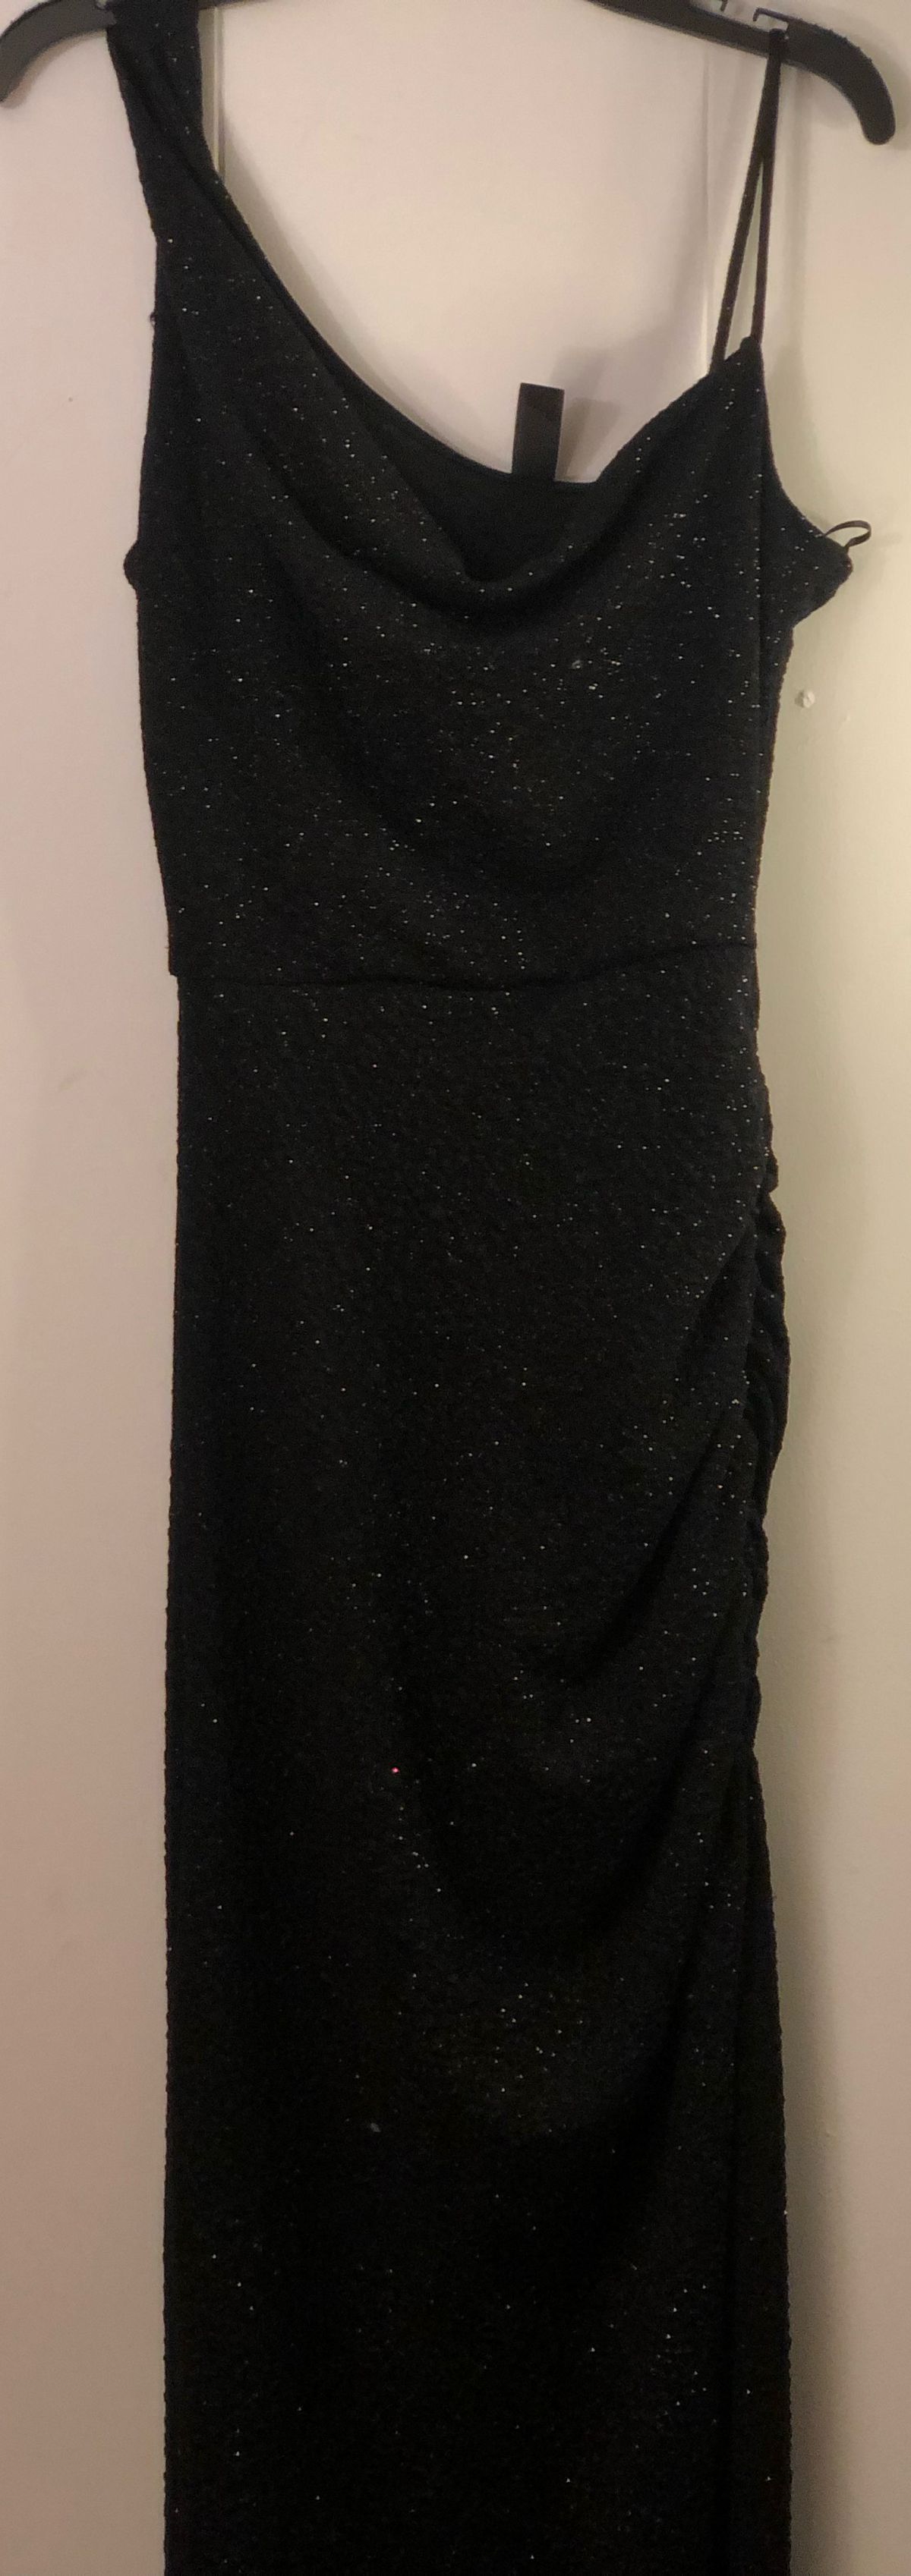 Windsor Size 2 Prom Black Side Slit Dress on Queenly